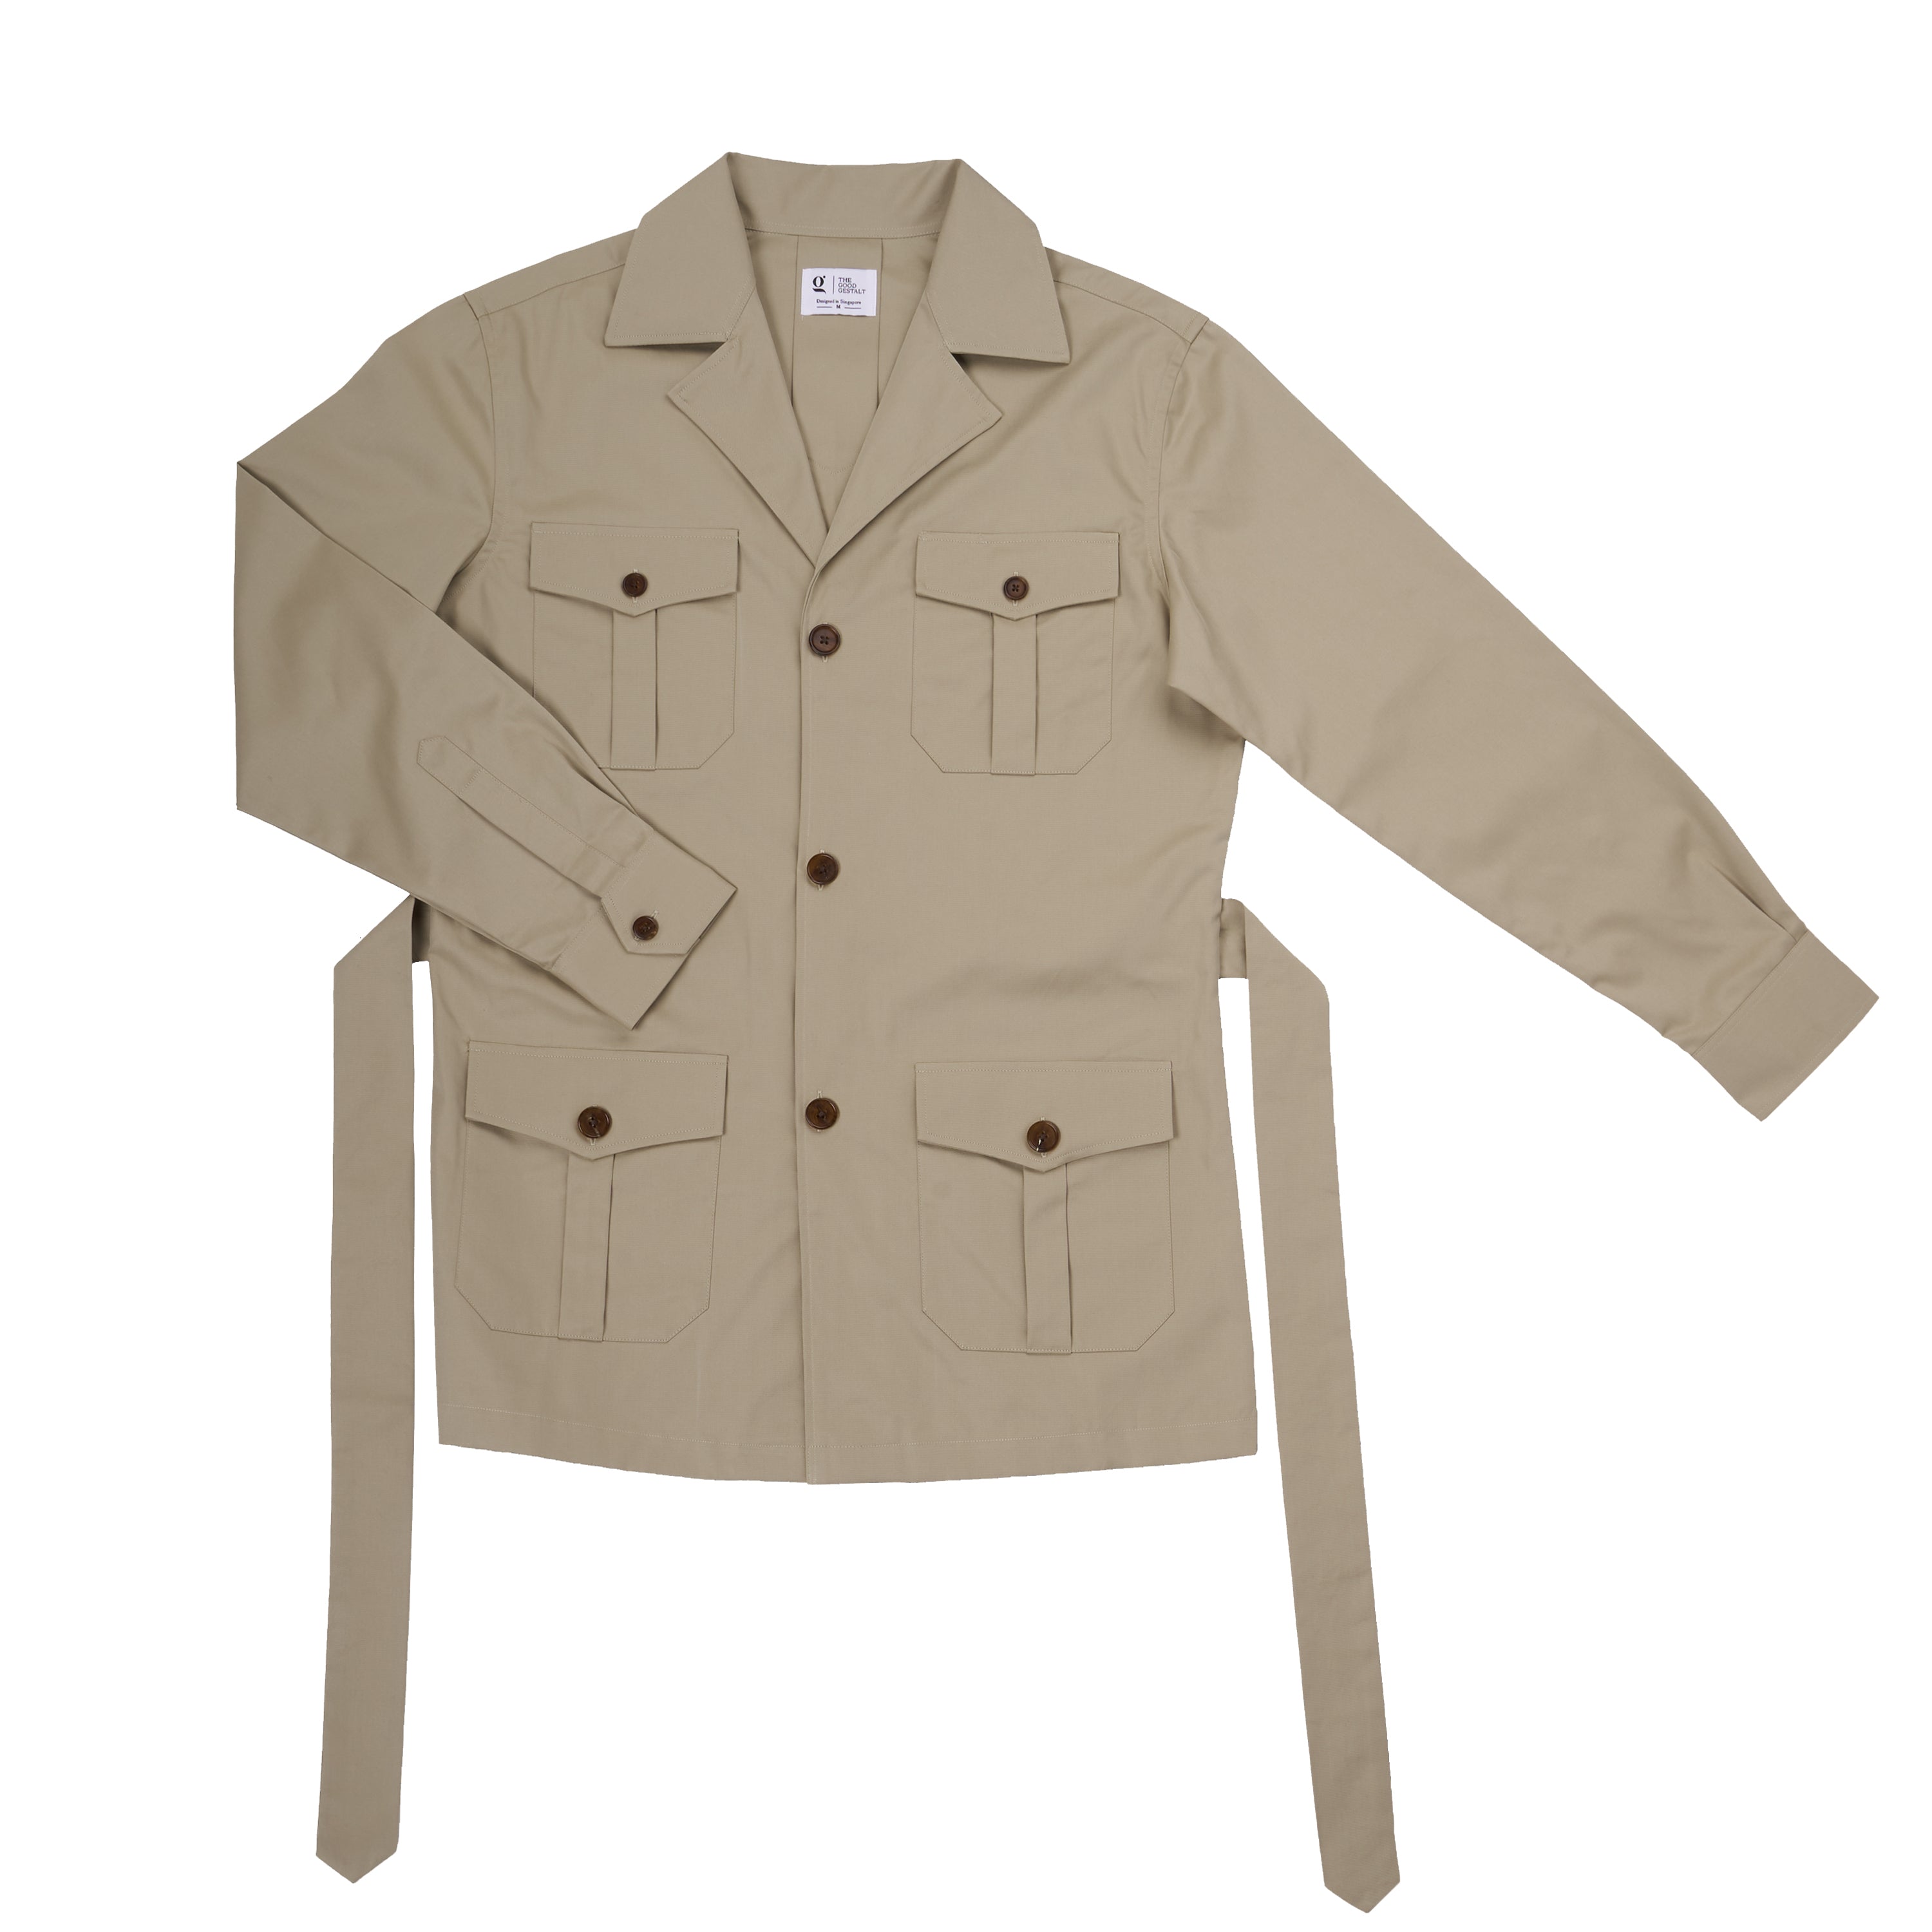 Cotton Safari Jacket in Khaki Size M